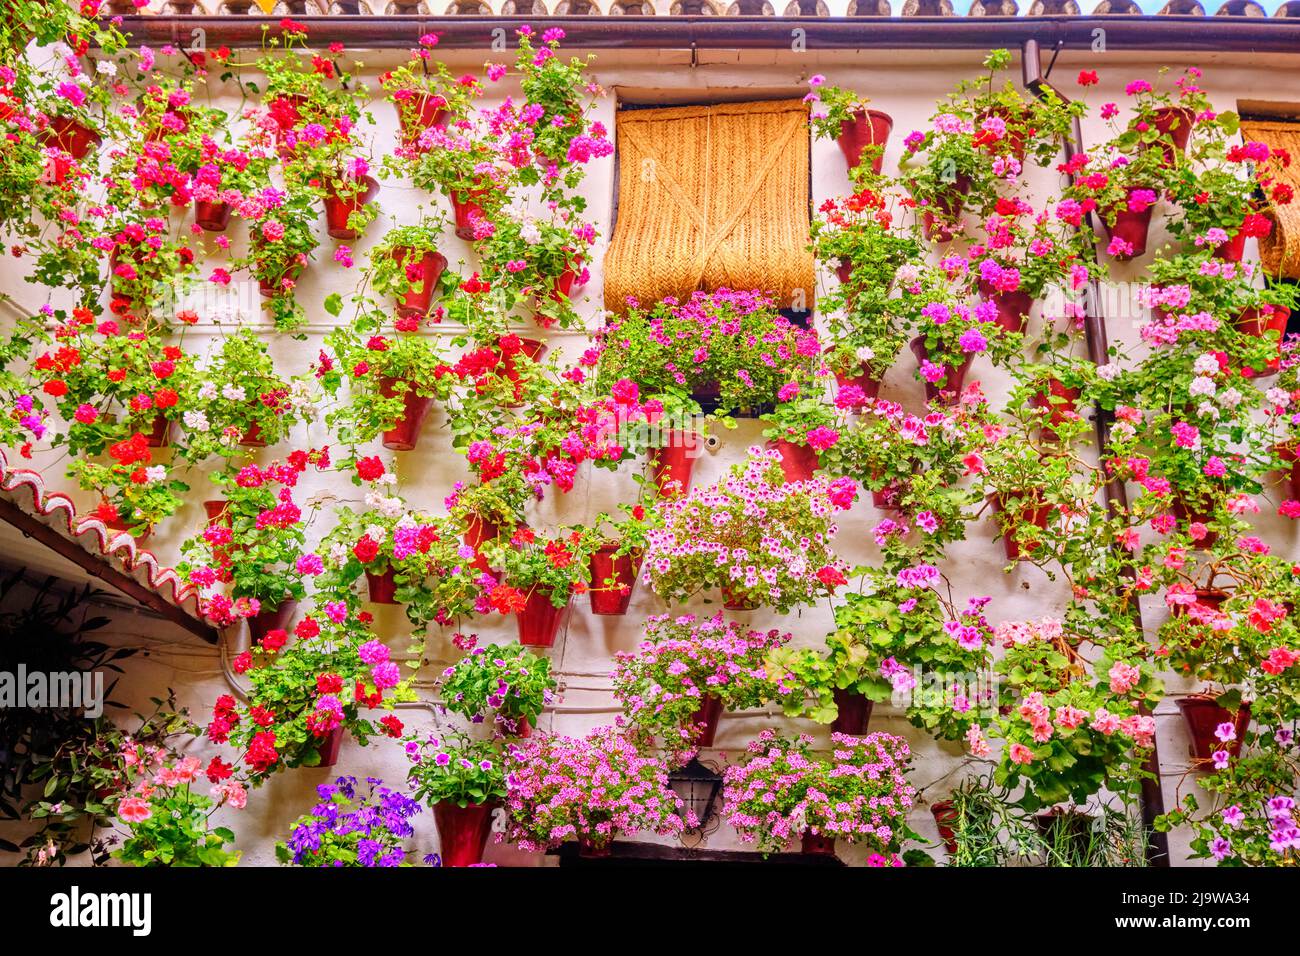 Un patio traditionnel de Cordoue, une cour pleine de fleurs et de fraîcheur. Patrimoine culturel immatériel de l'humanité de l'UNESCO. San Basilio, Espagne Banque D'Images